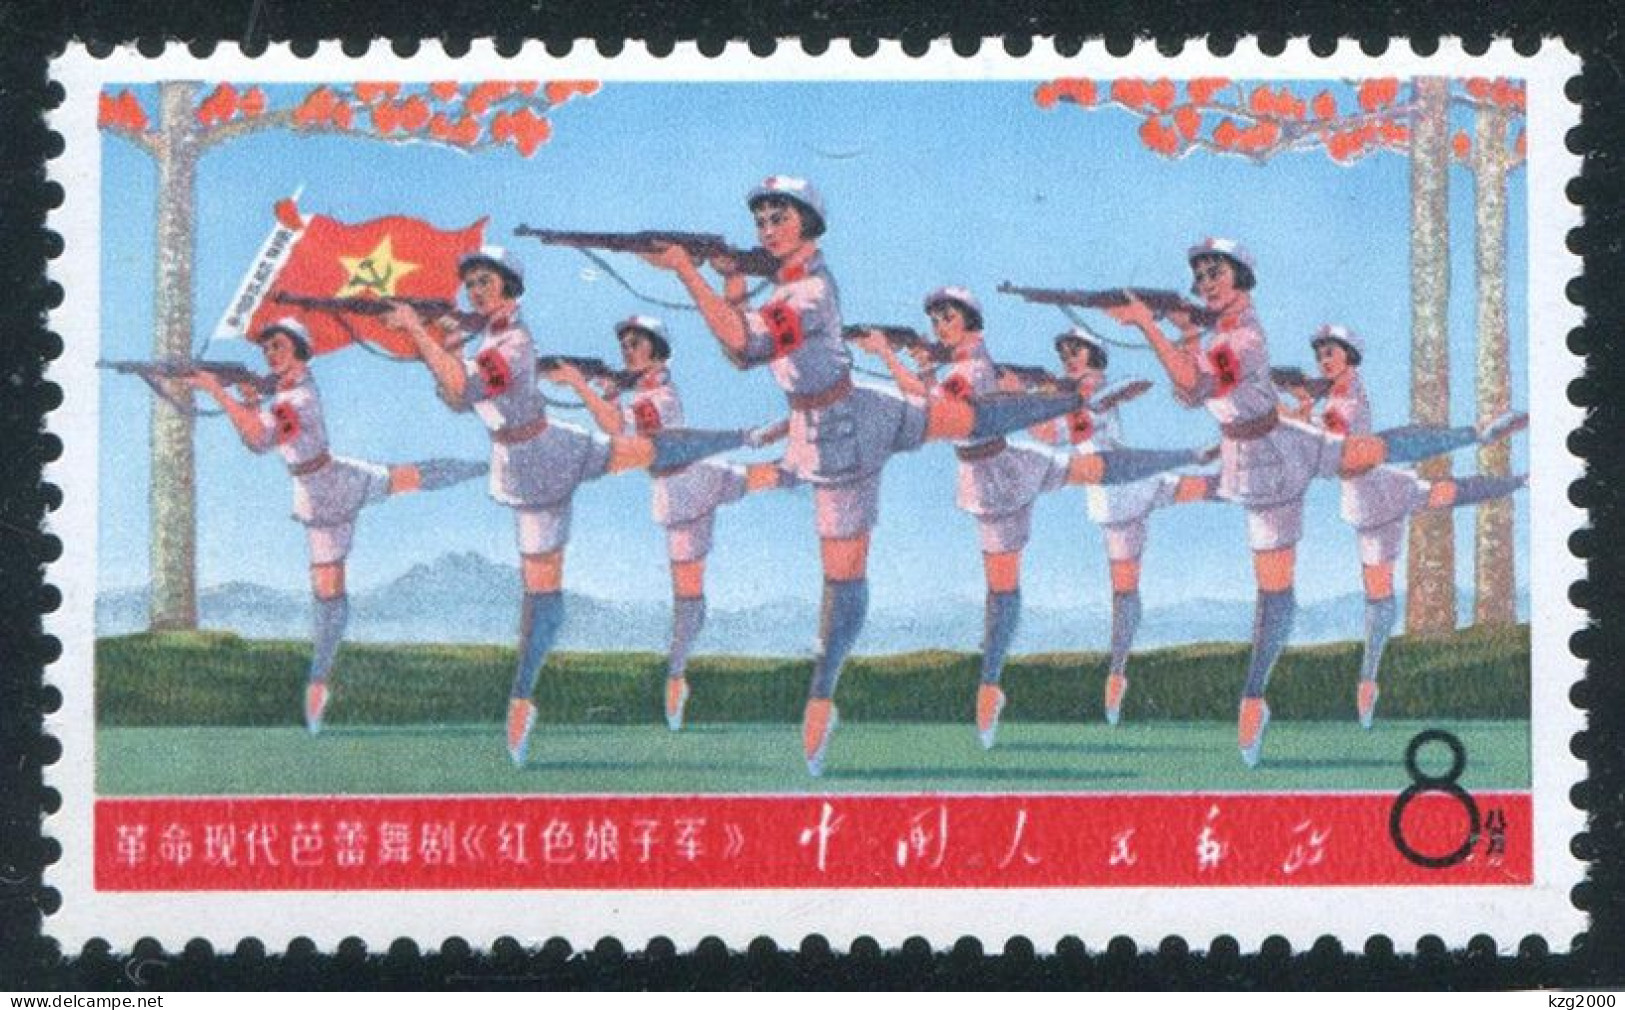 China 1968 W5 Stamp Chairman Mao's Revolution In Literature & Art MNH Stamps 9-7 - Ungebraucht